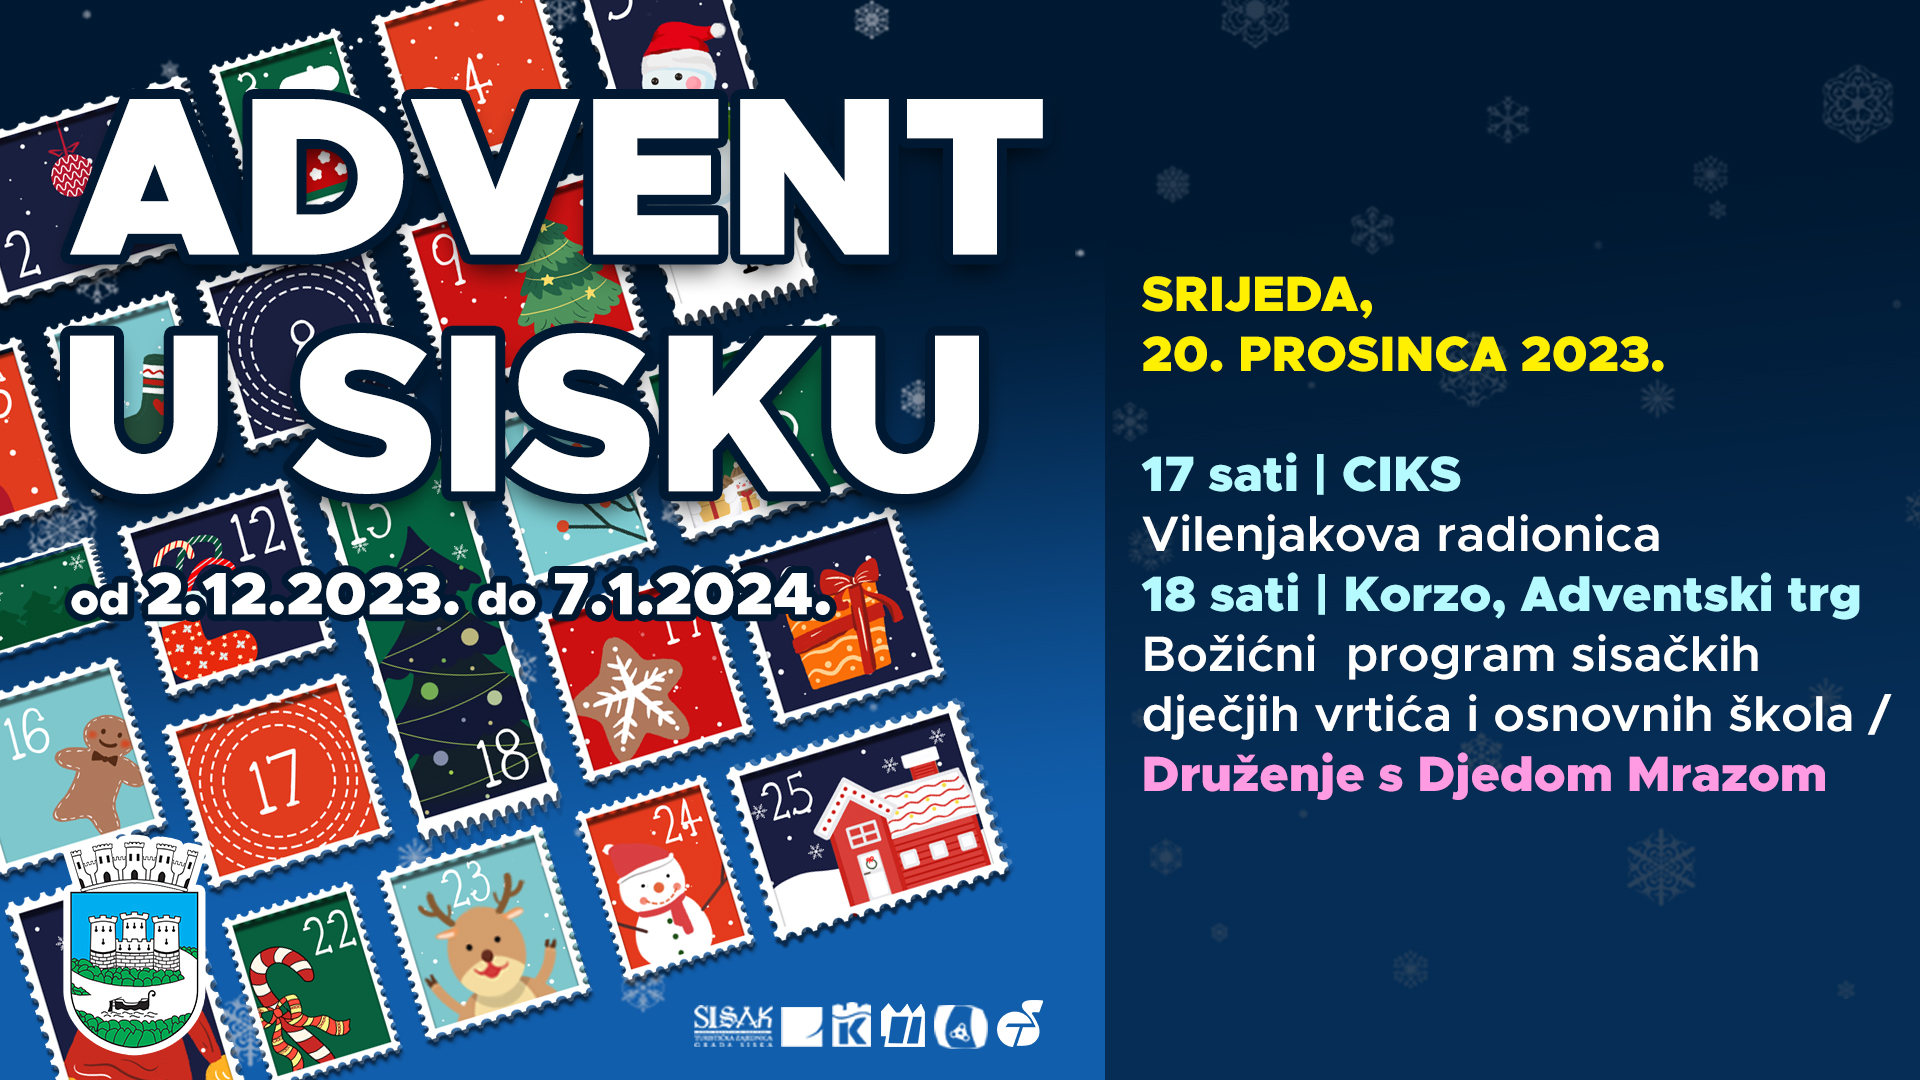 You are currently viewing Treći dan programa dječjih vrtića, osnovnih škola i plesnih udruga na Adventu, 20.12.2023.